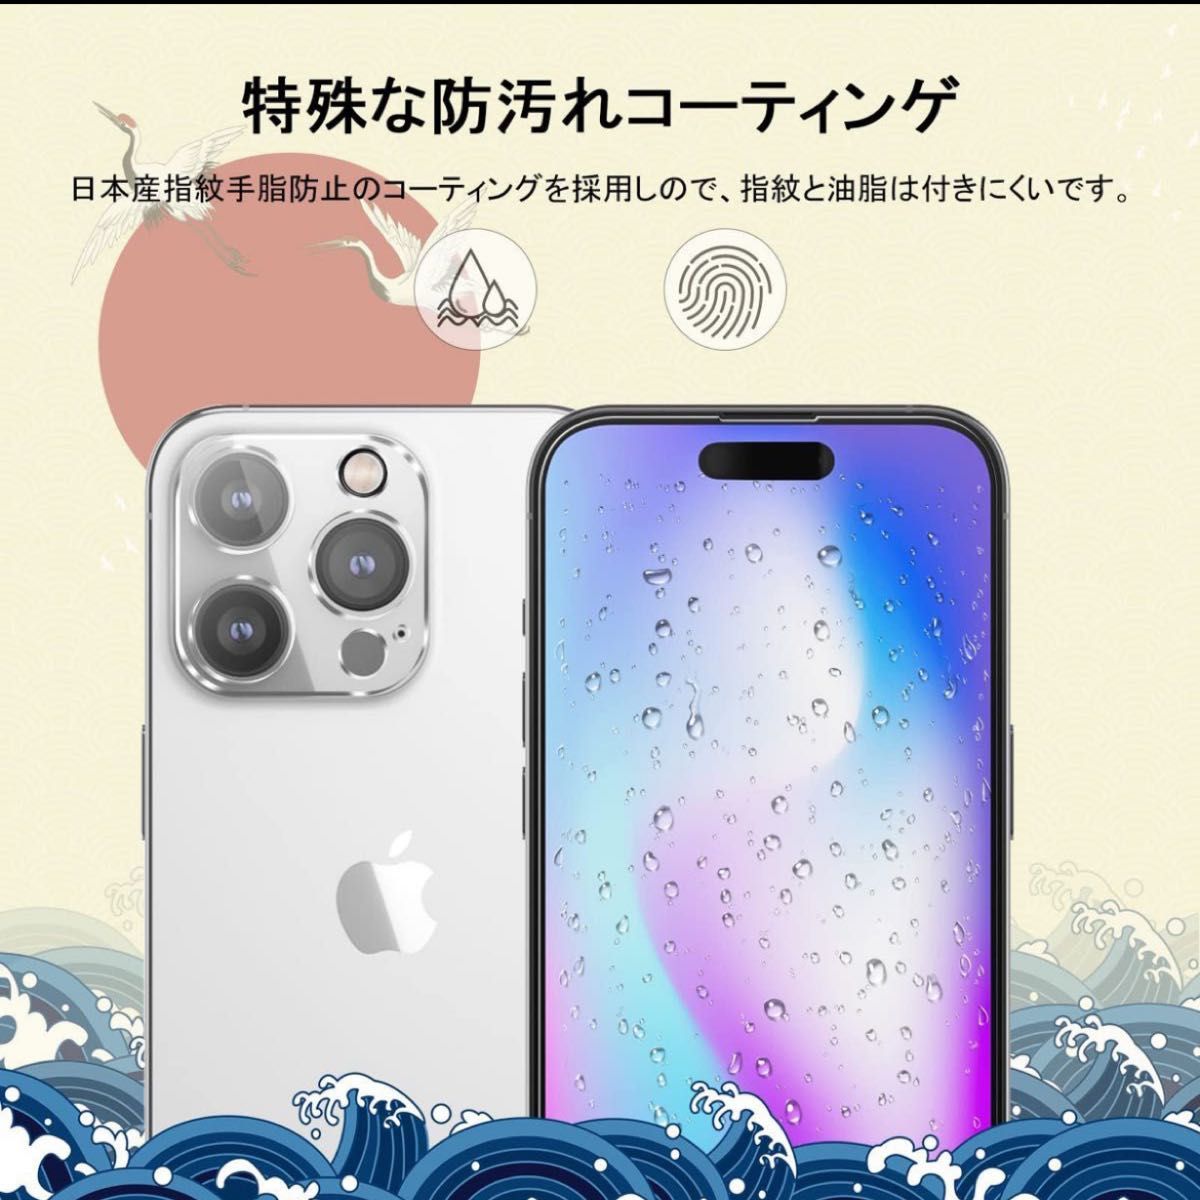 iPhone14 Pro ガラスフィルム カメラフィルム 2枚 旭硝子素材製 強化ガラス 液晶保護 9H硬度 耐衝撃 気泡防止